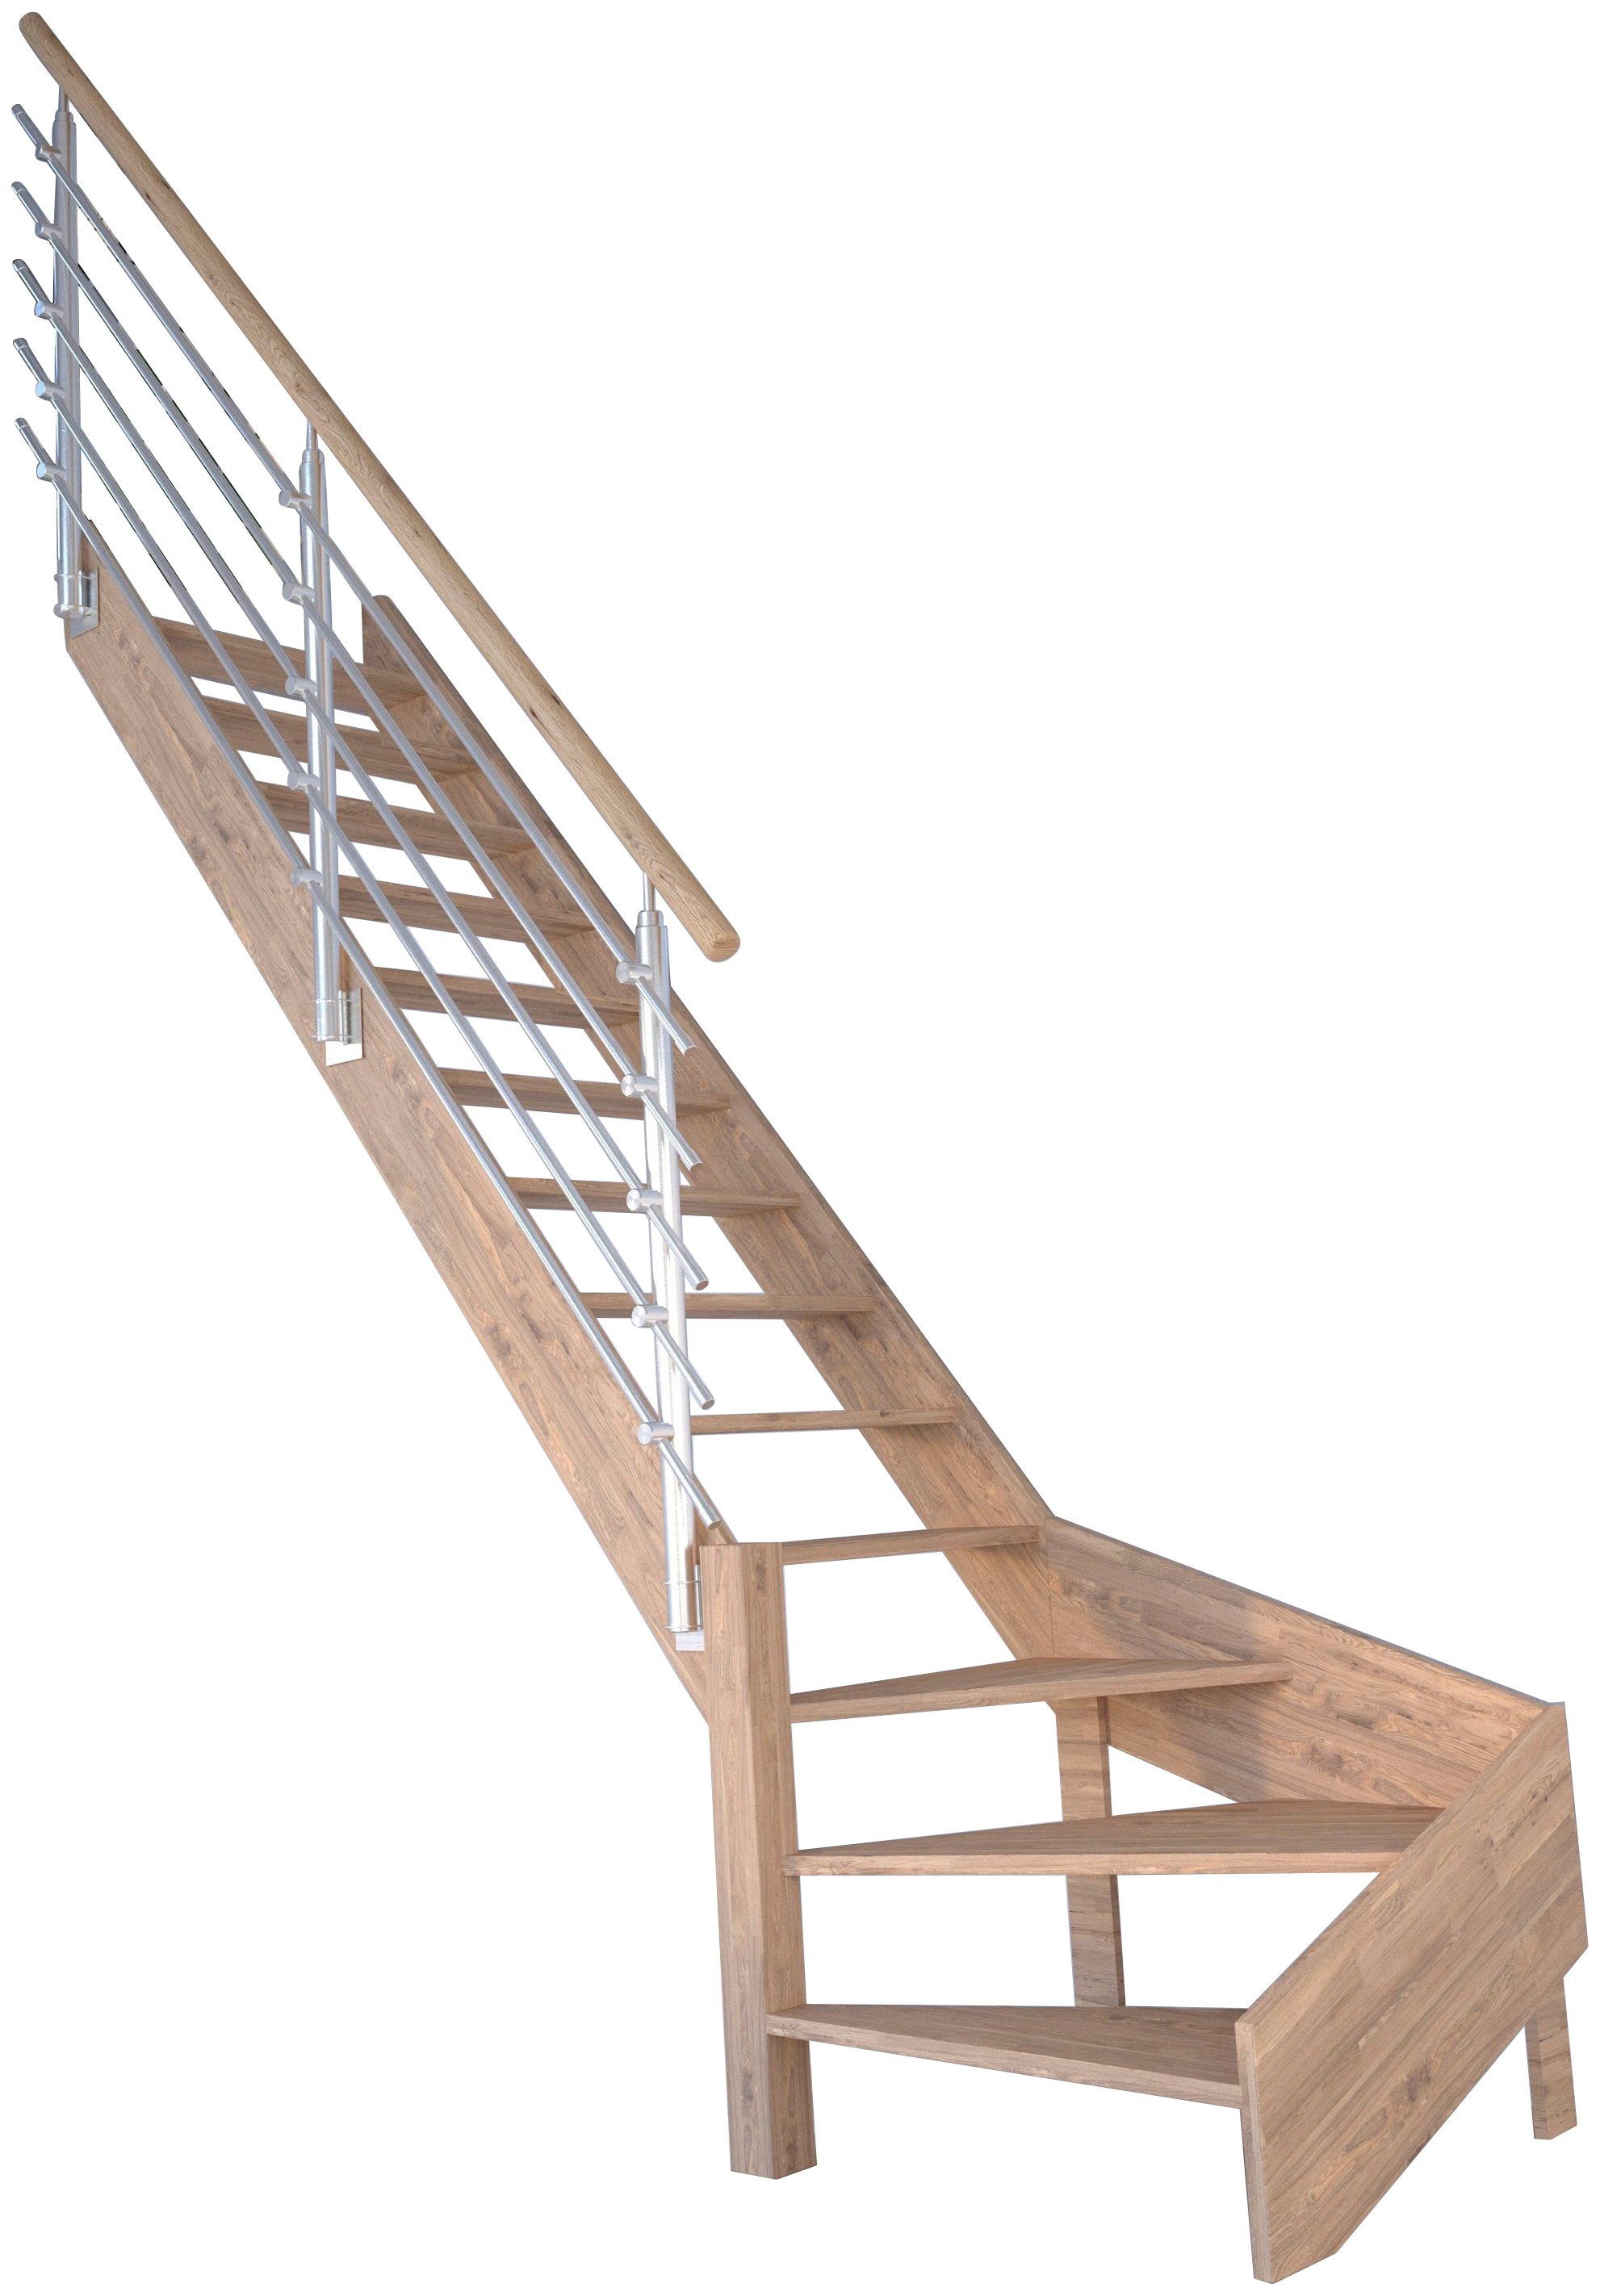 Starwood Raumspartreppe Massivholz Rhodos, Design-Geländer Edelstahl, für Geschosshöhen bis 300 cm, Stufen offen, gewendelt Links, Durchgehende Wangenteile